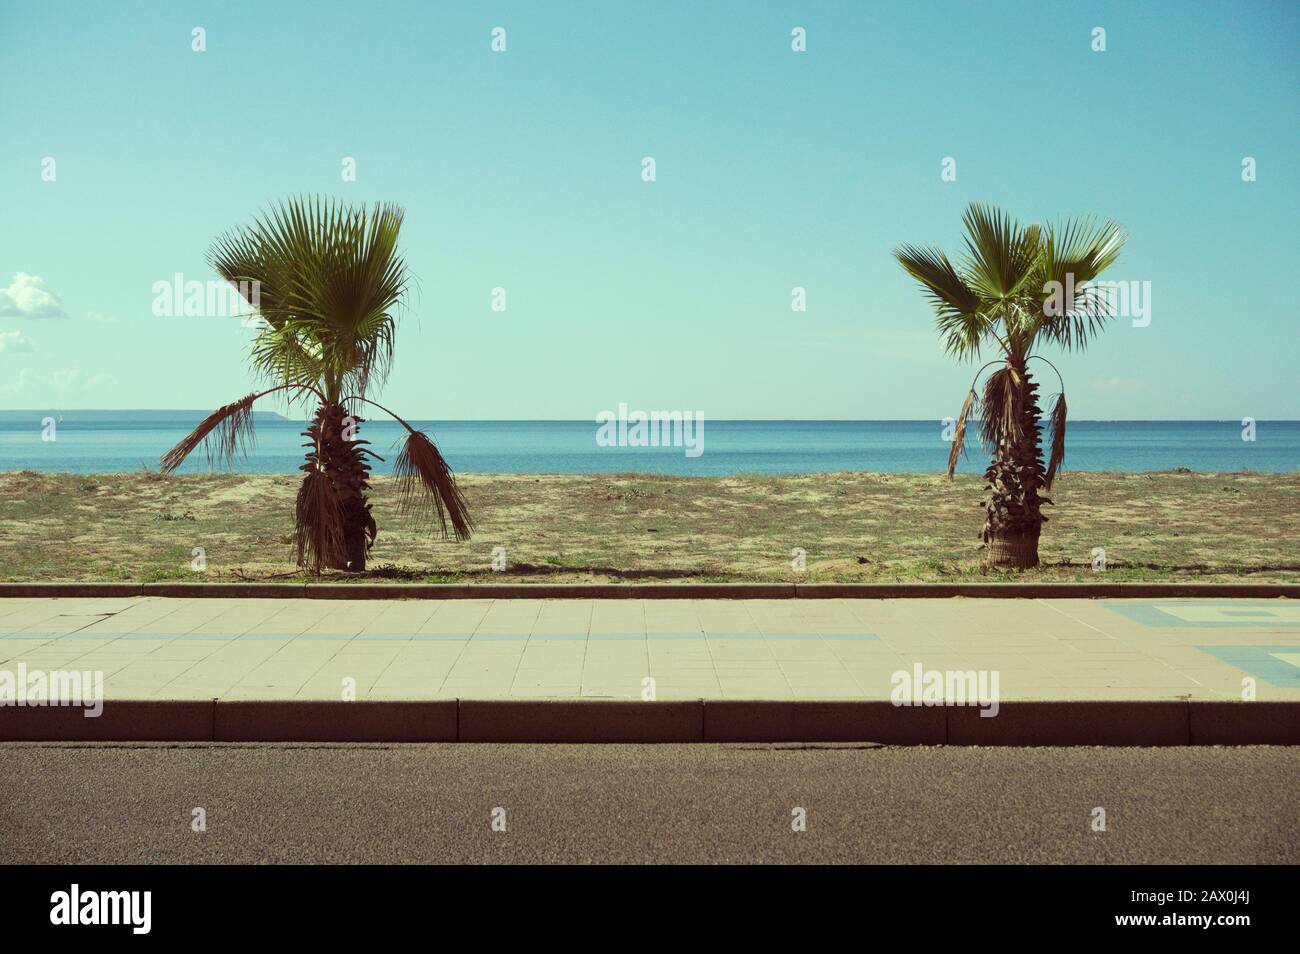 fan palm trees along a coastal road in Sardinia, Italy Stock Photo